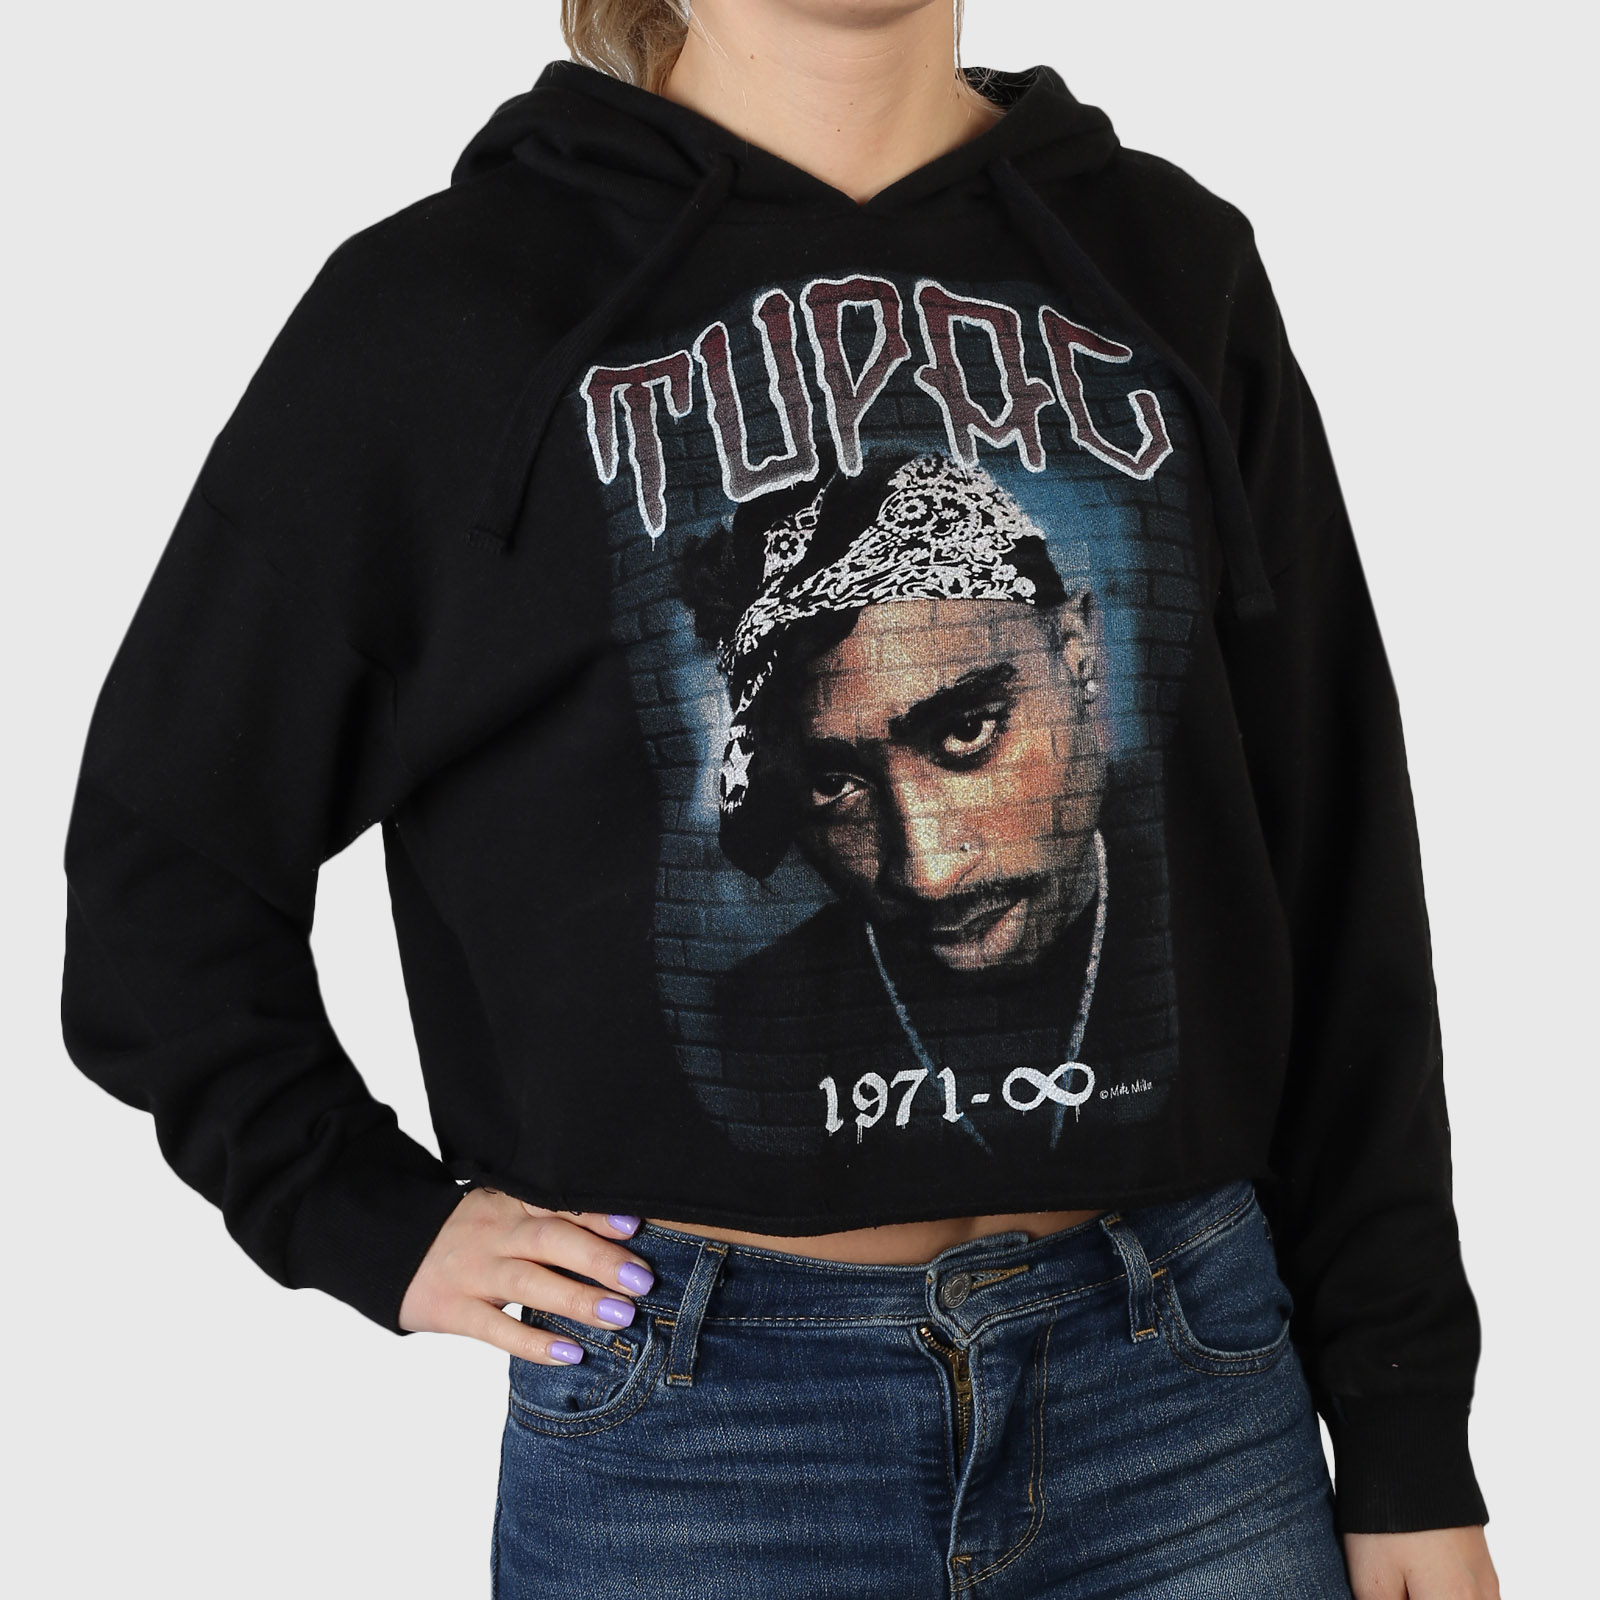 Объемная женская кофта-толстовка Cotton on – граффити фото-принт «Tupac 1971 – ?» №885